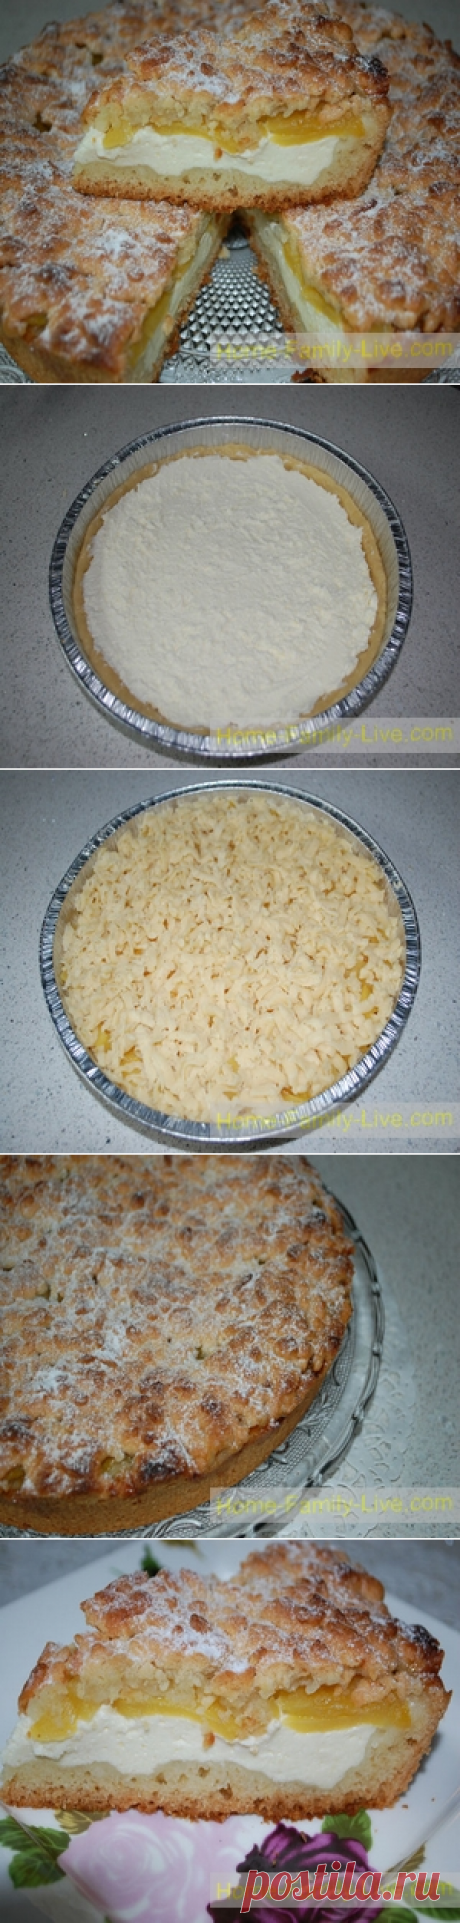 Пирог из  песочного теста с творогом и абрикосами/Сайт с пошаговыми рецептами с фото для тех кто любит готовить